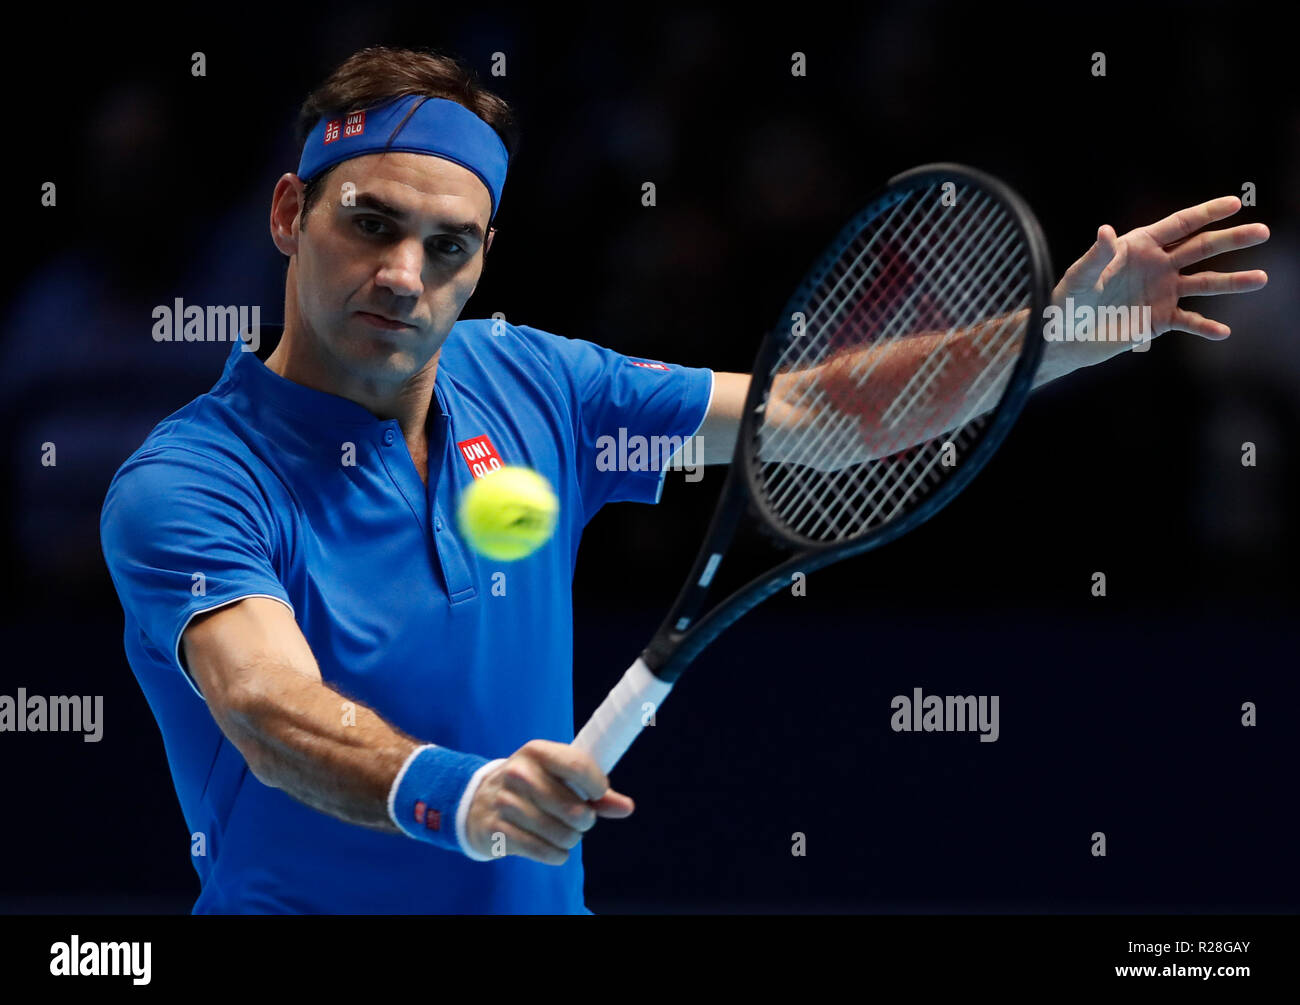 Londres, Royaume-Uni. 17 novembre, 2018. La Suisse de Roger Federer hits un retour au cours de la demi-finale contre des célibataires Alexander Zverev de l'Allemagne durant la journée 7 de la Nitto 2018 ATP World Tour finals à l'O2 Arena de Londres, Grande-Bretagne, le 17 novembre 2018. Roger Federer a perdu 0-2. Credit : Han Yan/Xinhua/Alamy Live News Banque D'Images